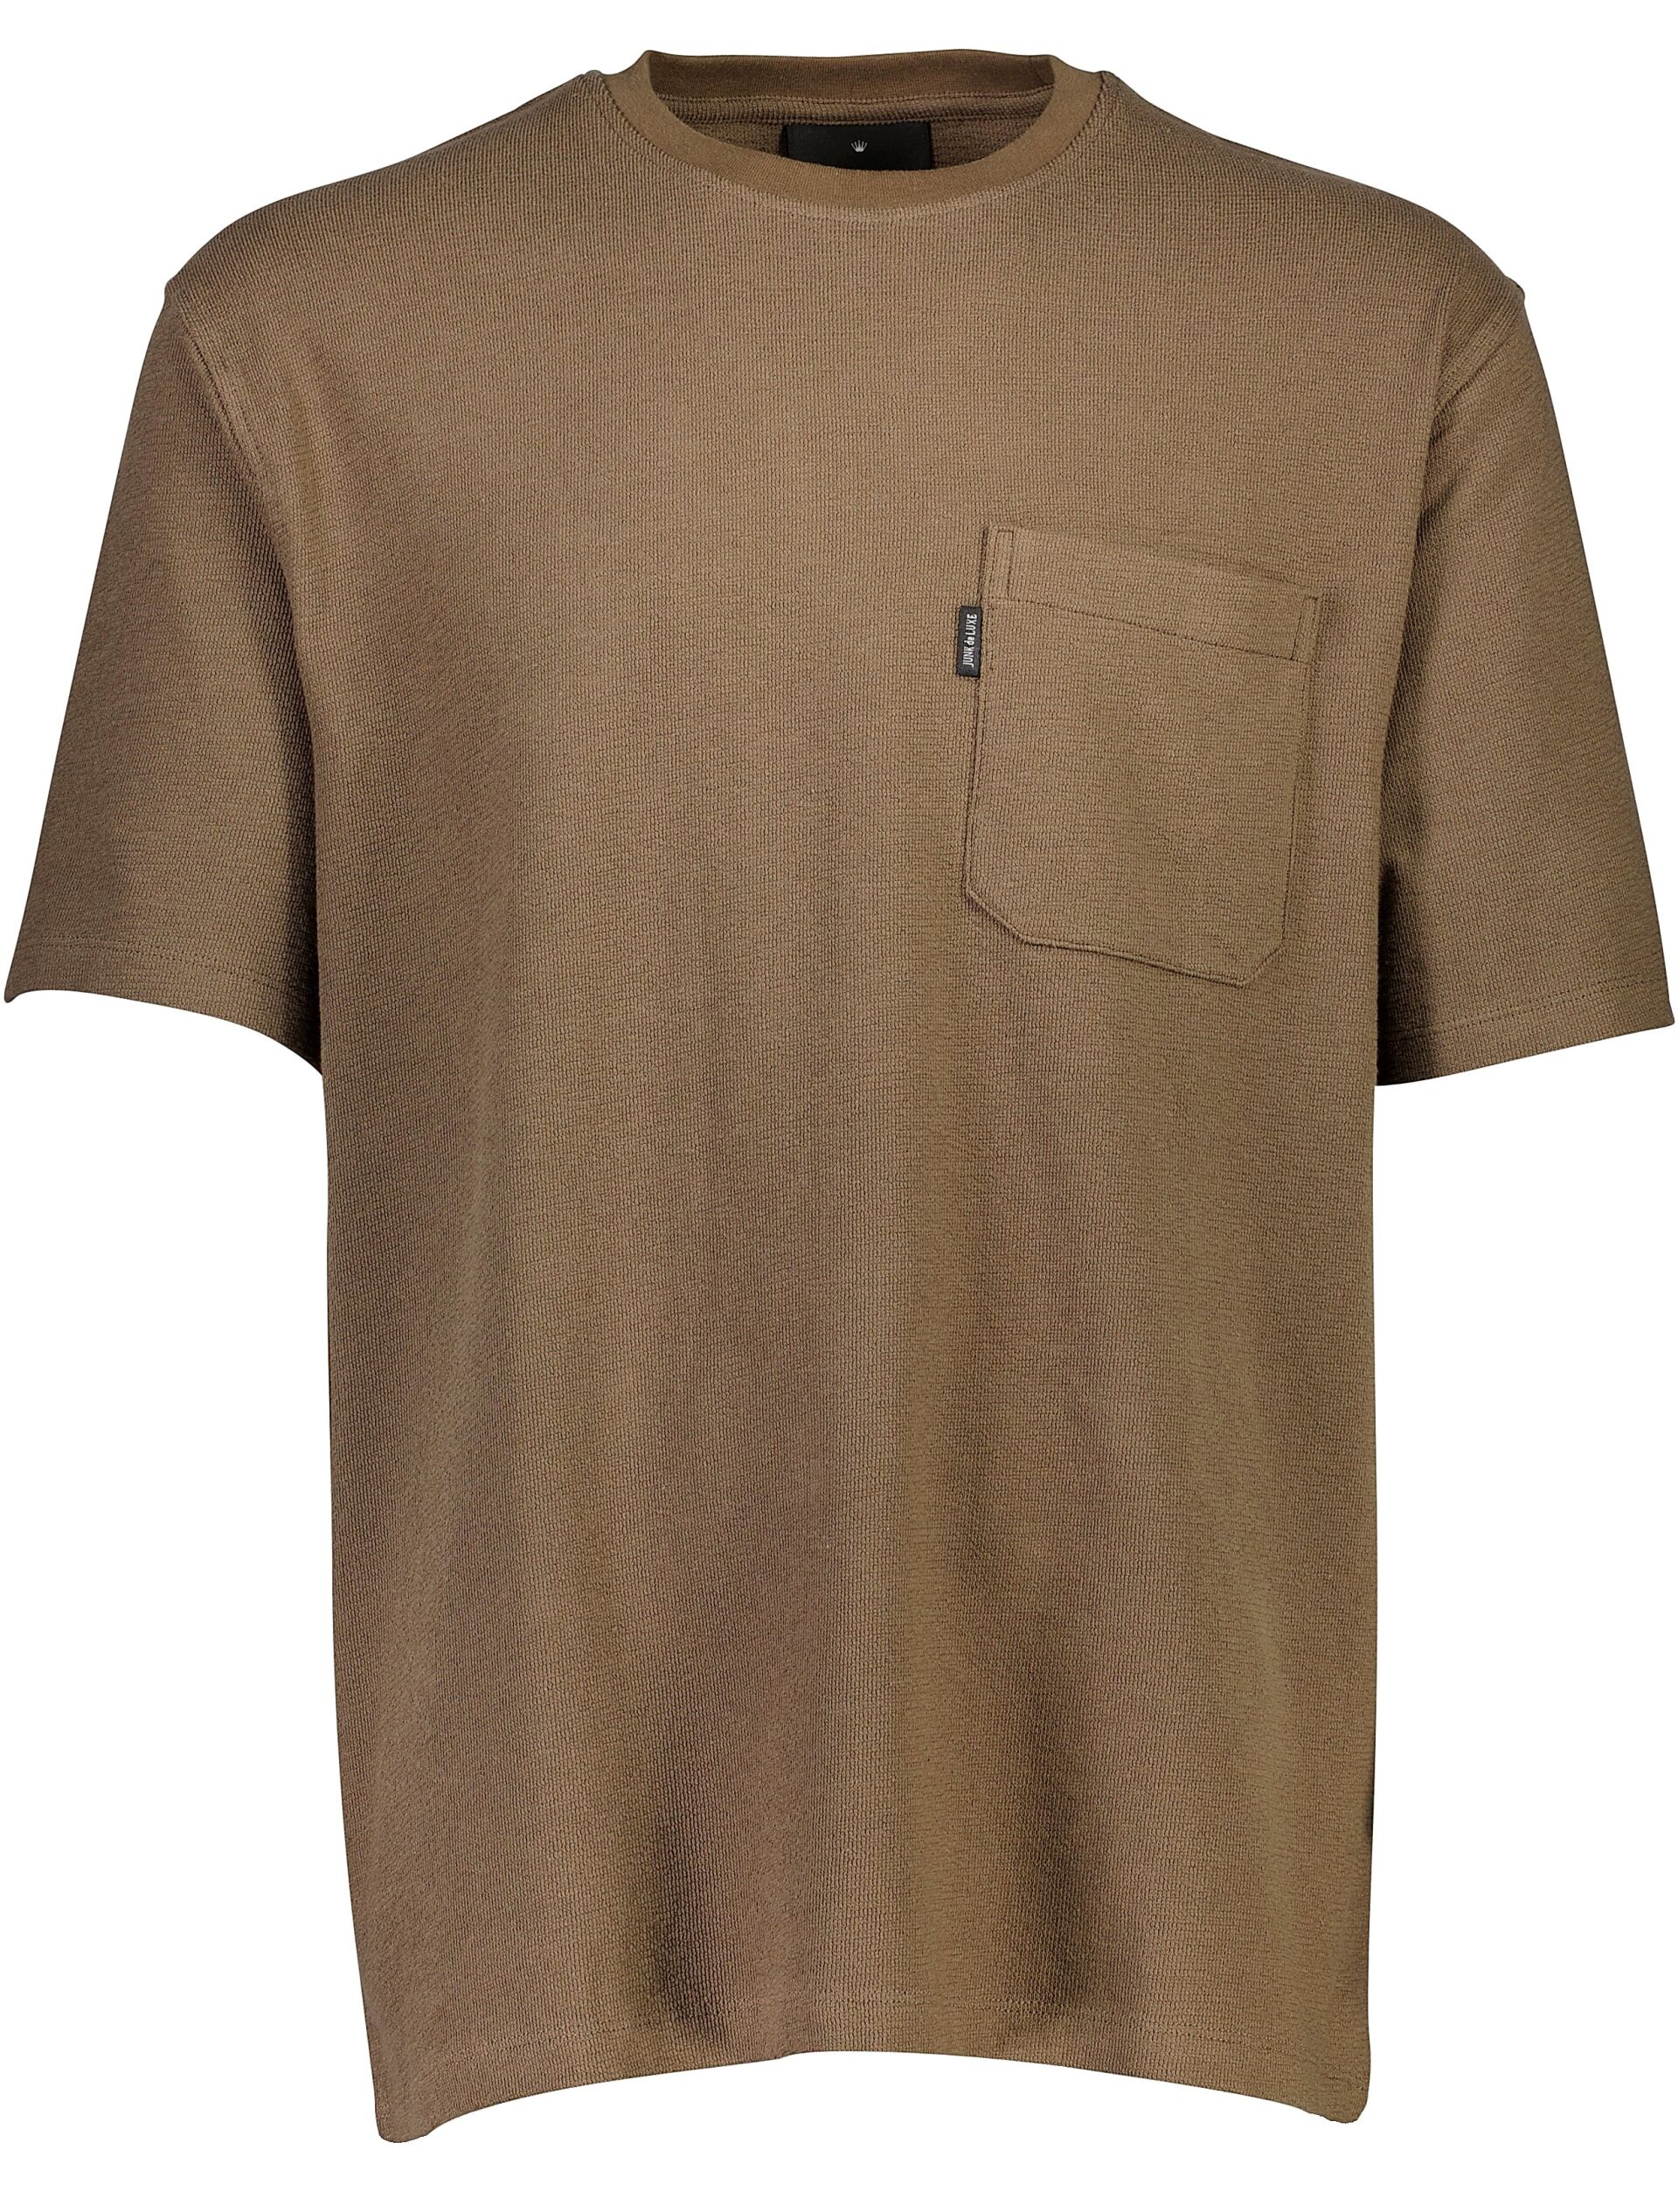 T-shirt T-shirt Brun 60-452040